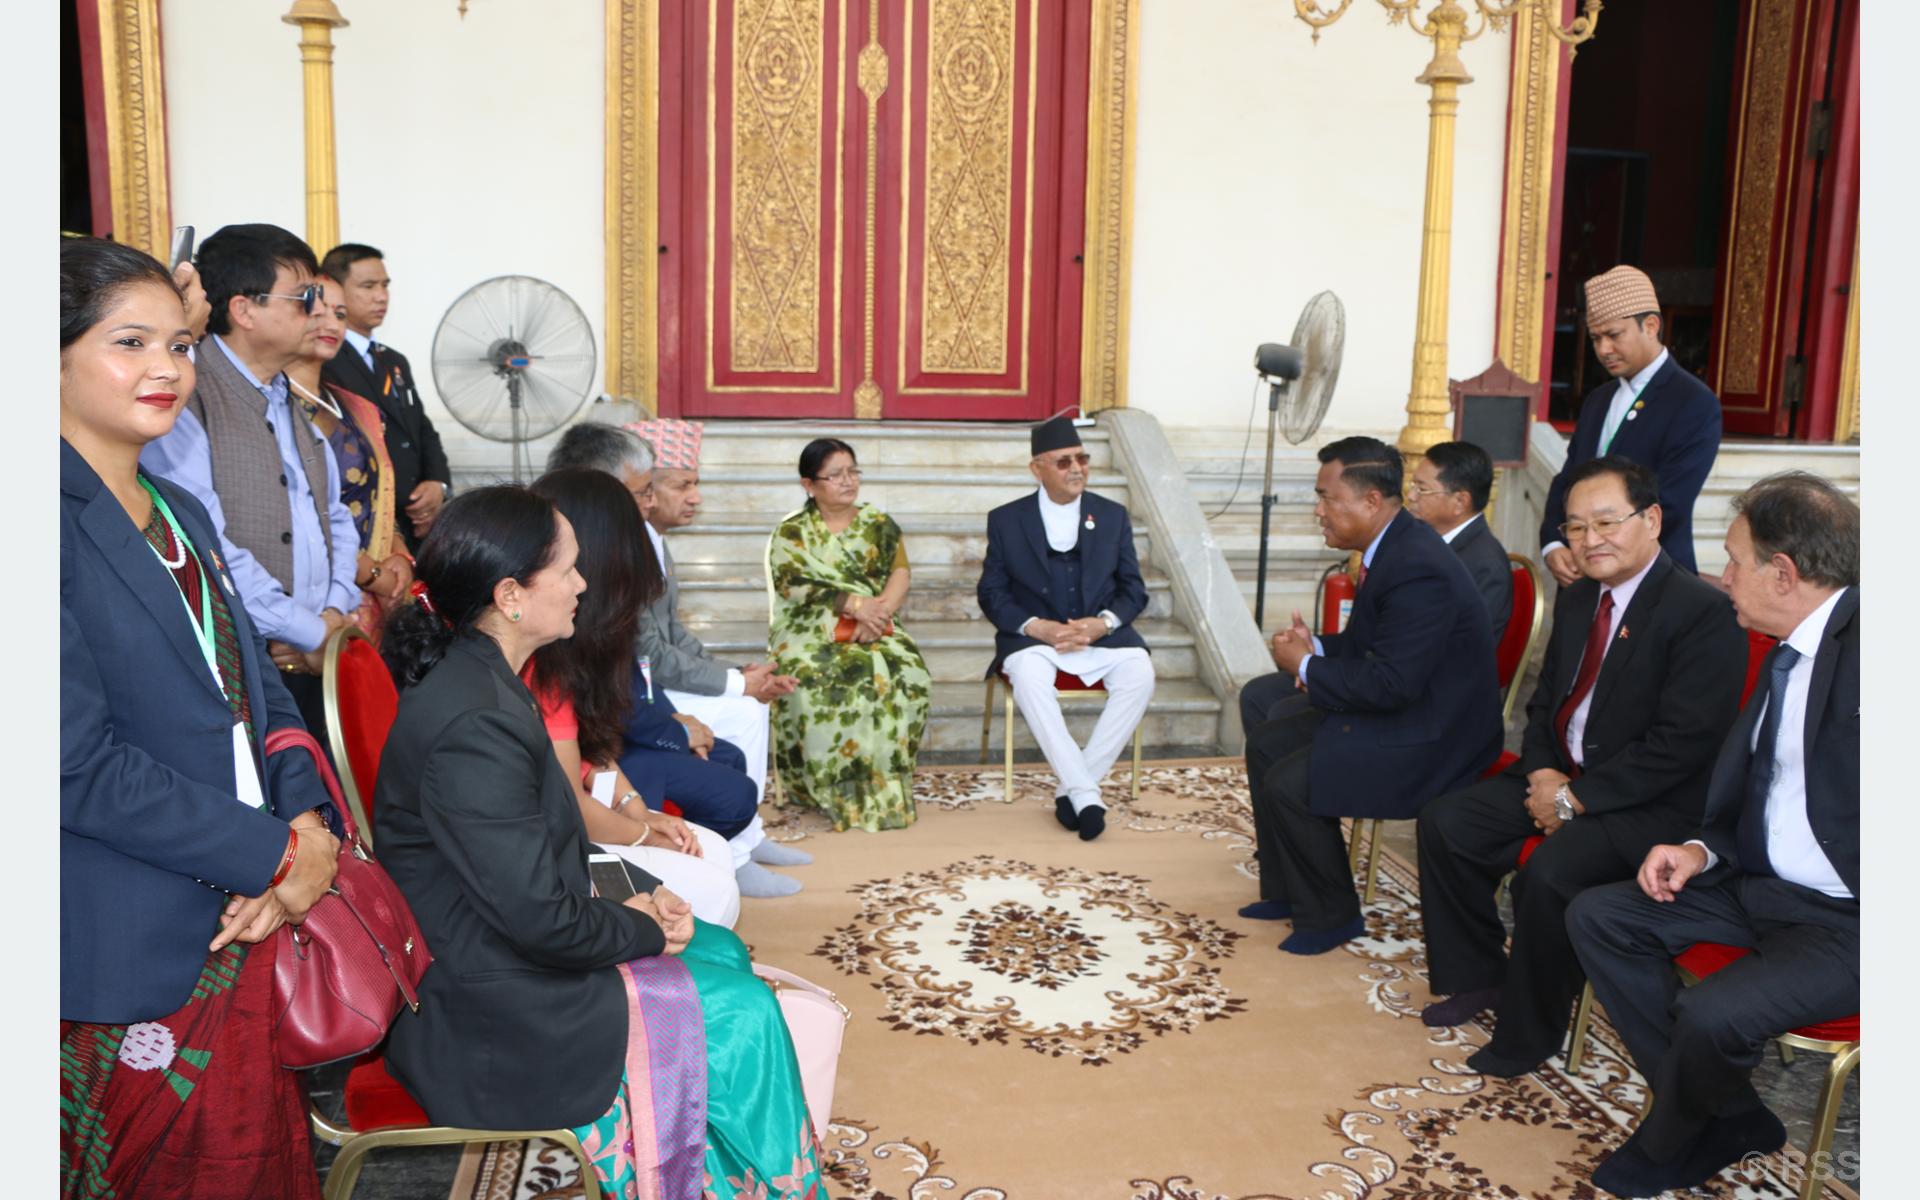 PM Oli visits Silver Pagoda in Phnom Penh